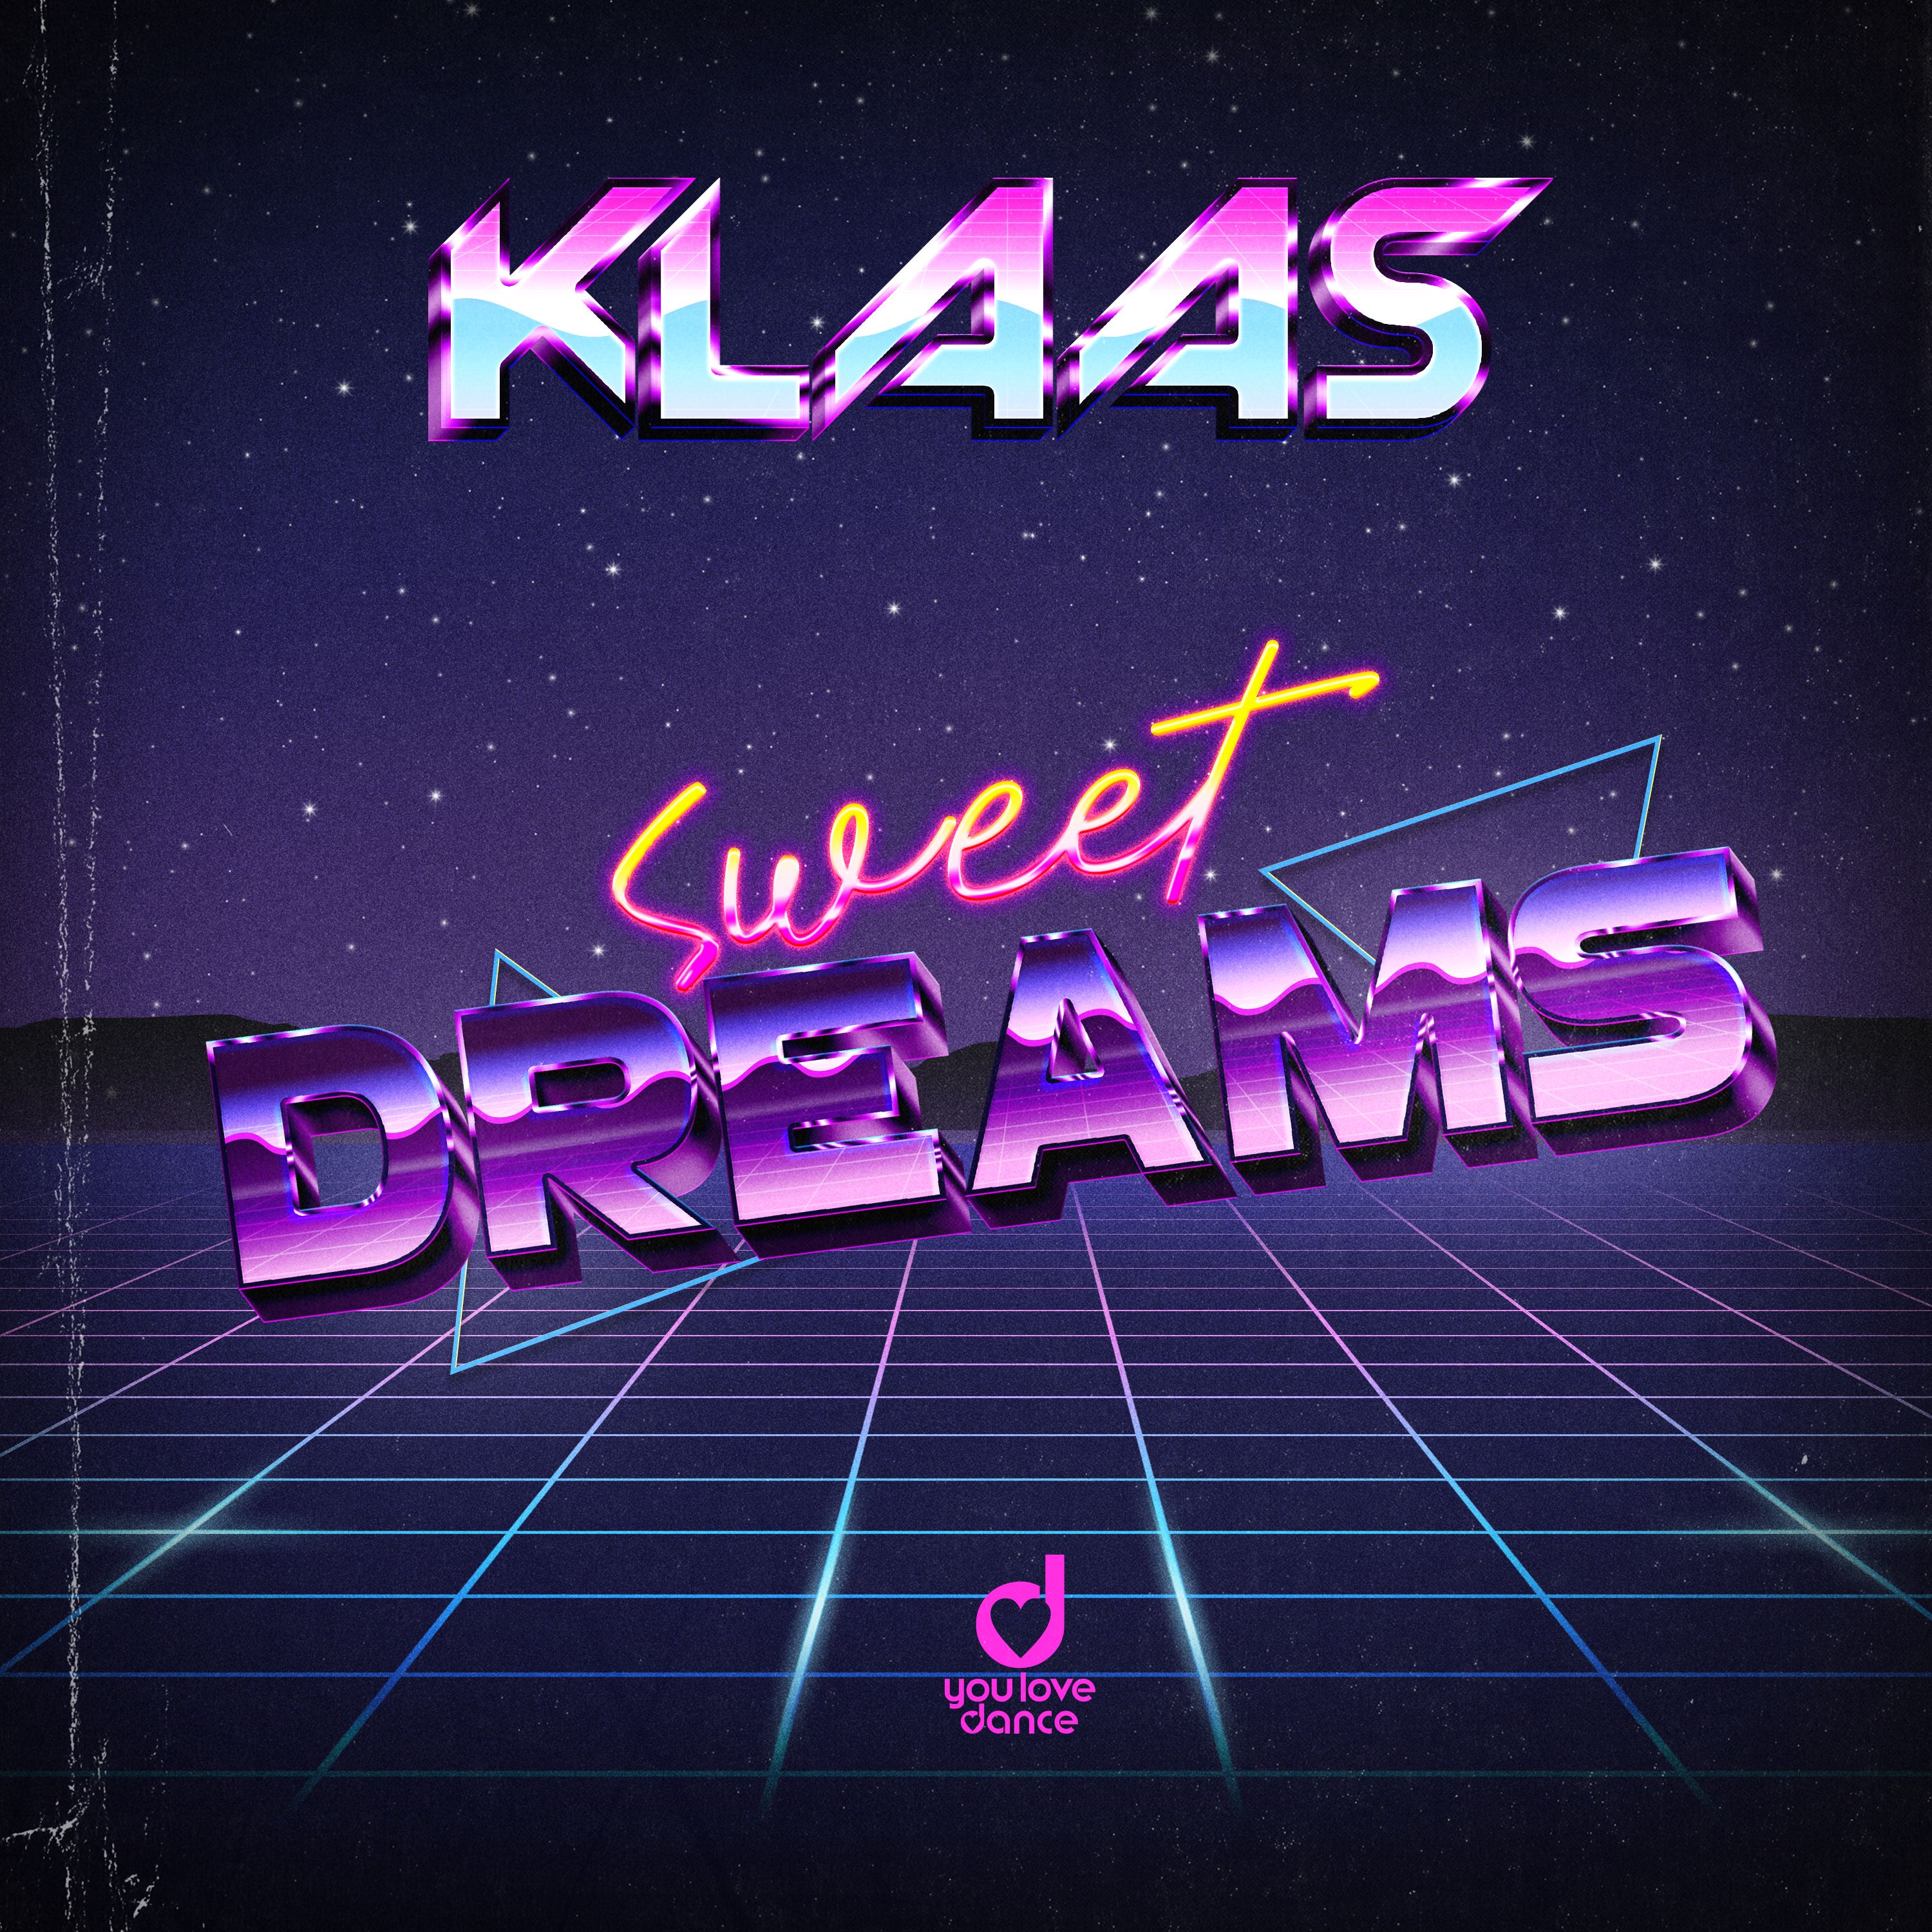 डाउनलोड करा Klaas - Sweet Dreams